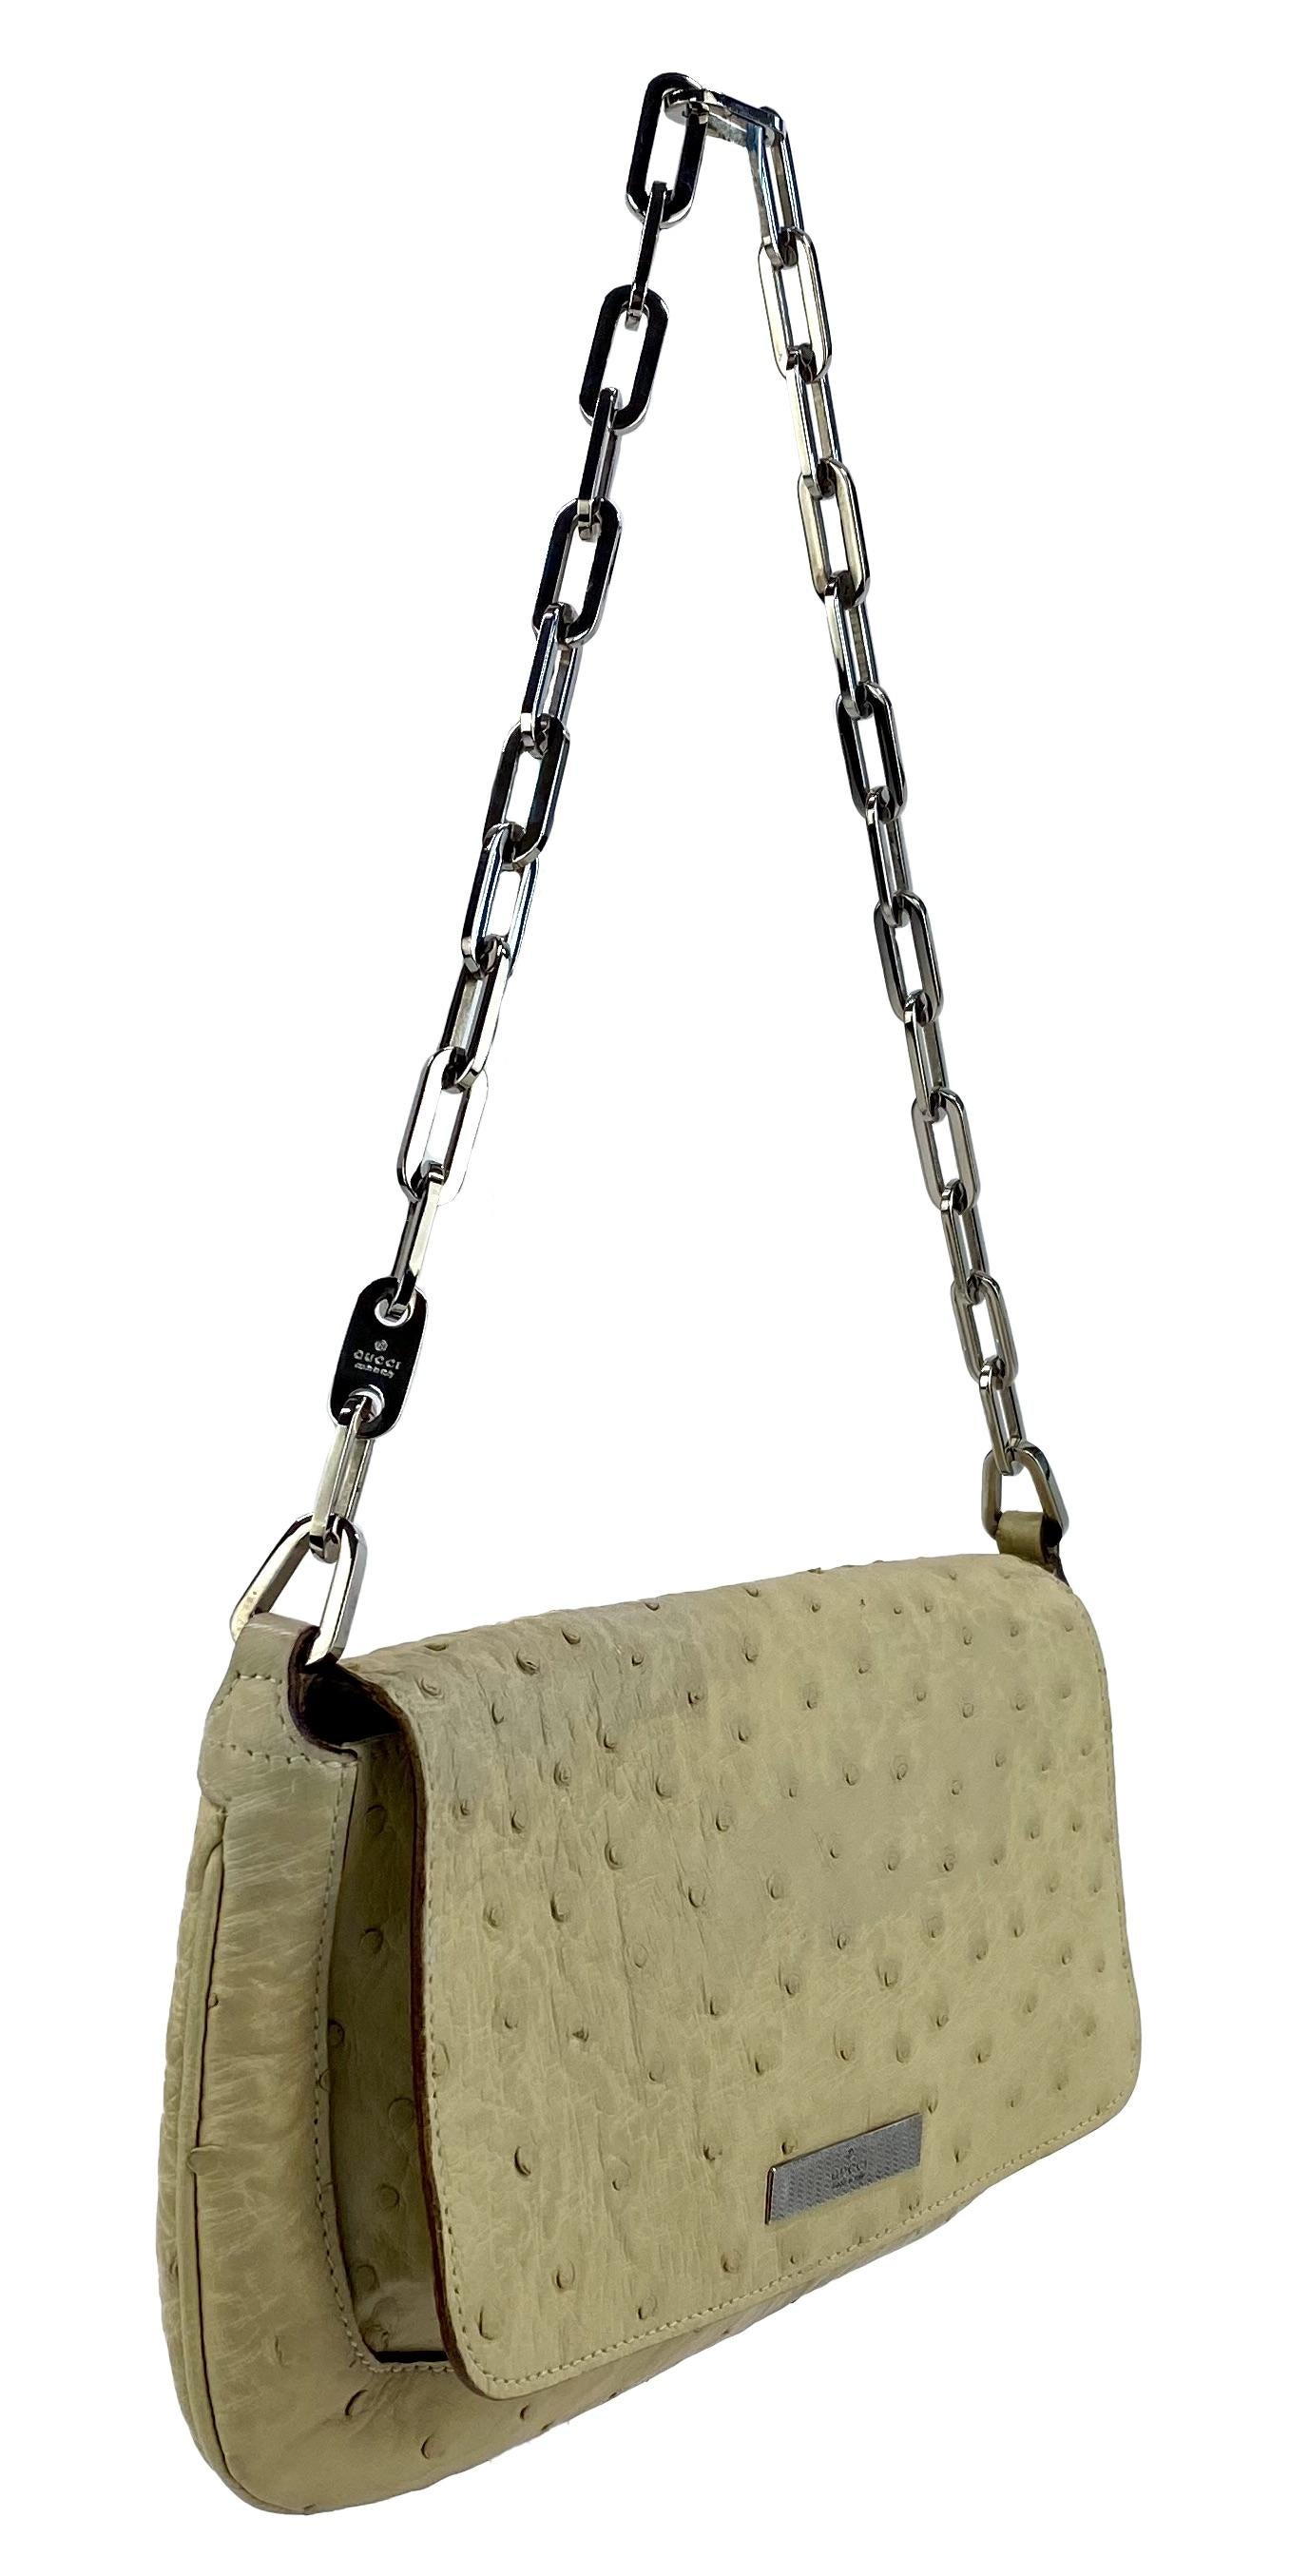 Voici un magnifique sac Gucci en cuir d'autruche avec une poignée en maillons de chaîne, conçu par Tom Ford. Ce sac de la collection printemps/été 2000 est presque entièrement en peau d'autruche avec un intérieur en nylon. De nombreux sacs comme